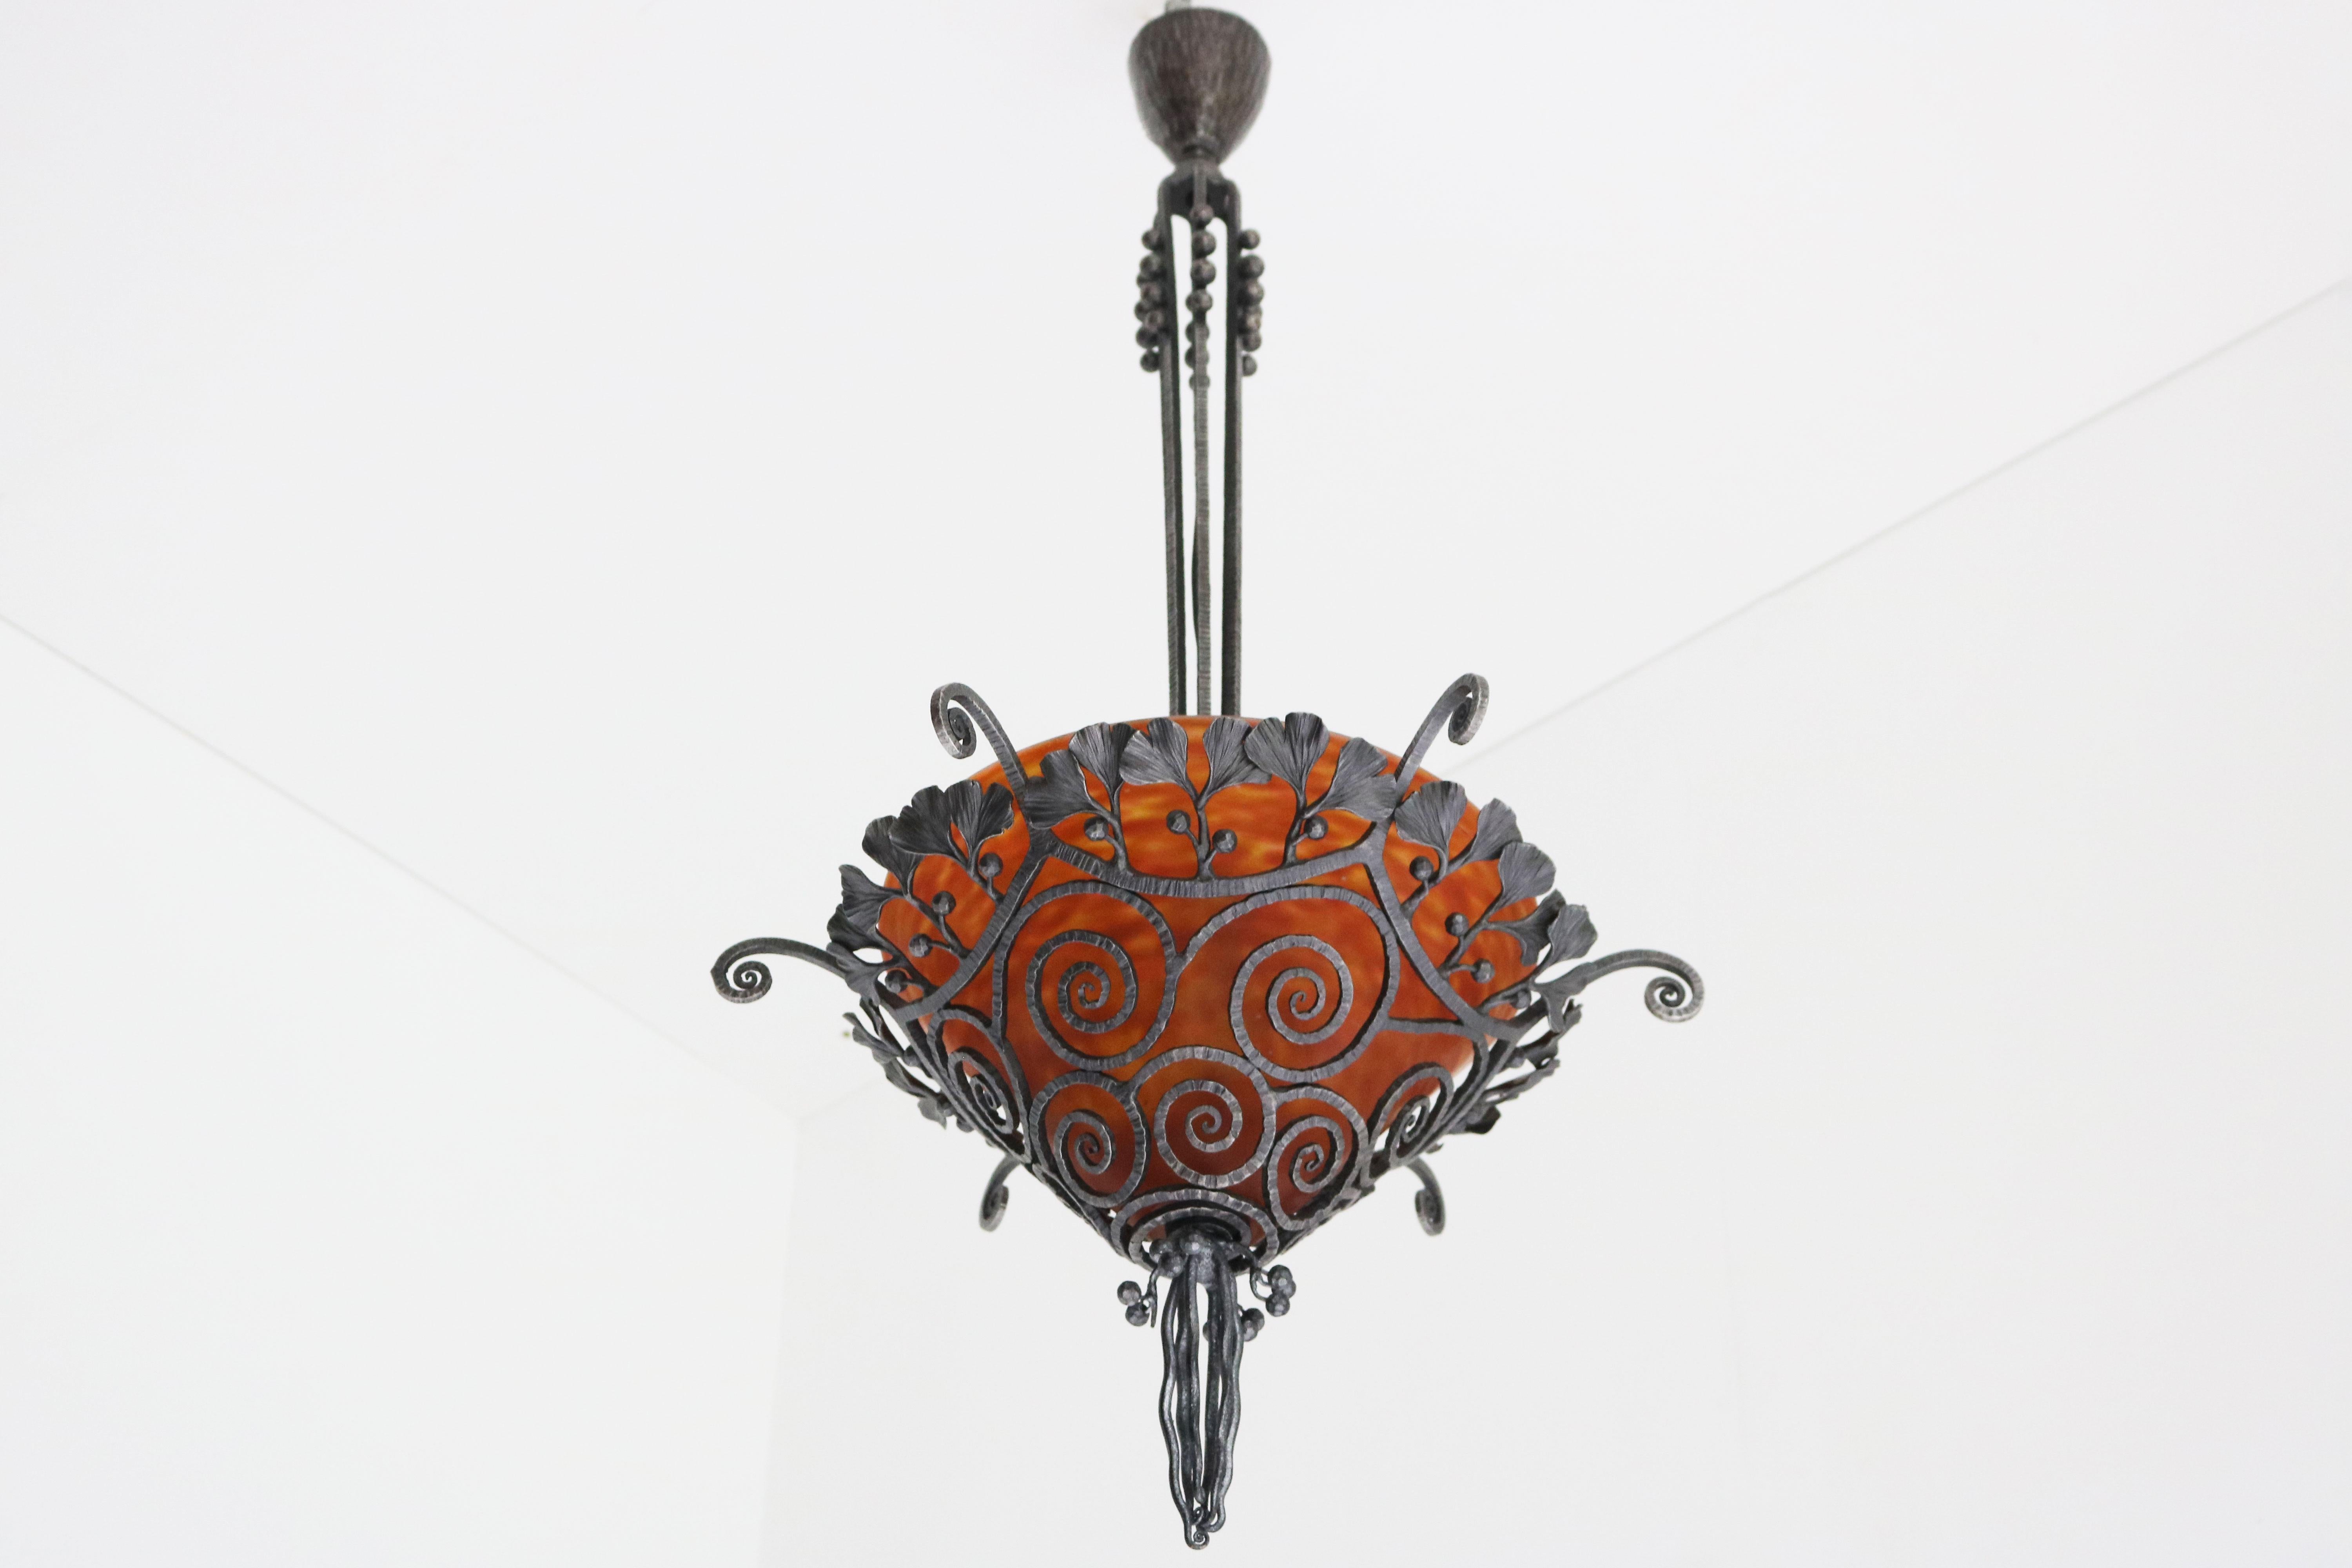 French Art Deco wrought iron chandelier by Edgar Brandt & Daum Nancy 1920 Glass In Good Condition For Sale In Ijzendijke, NL